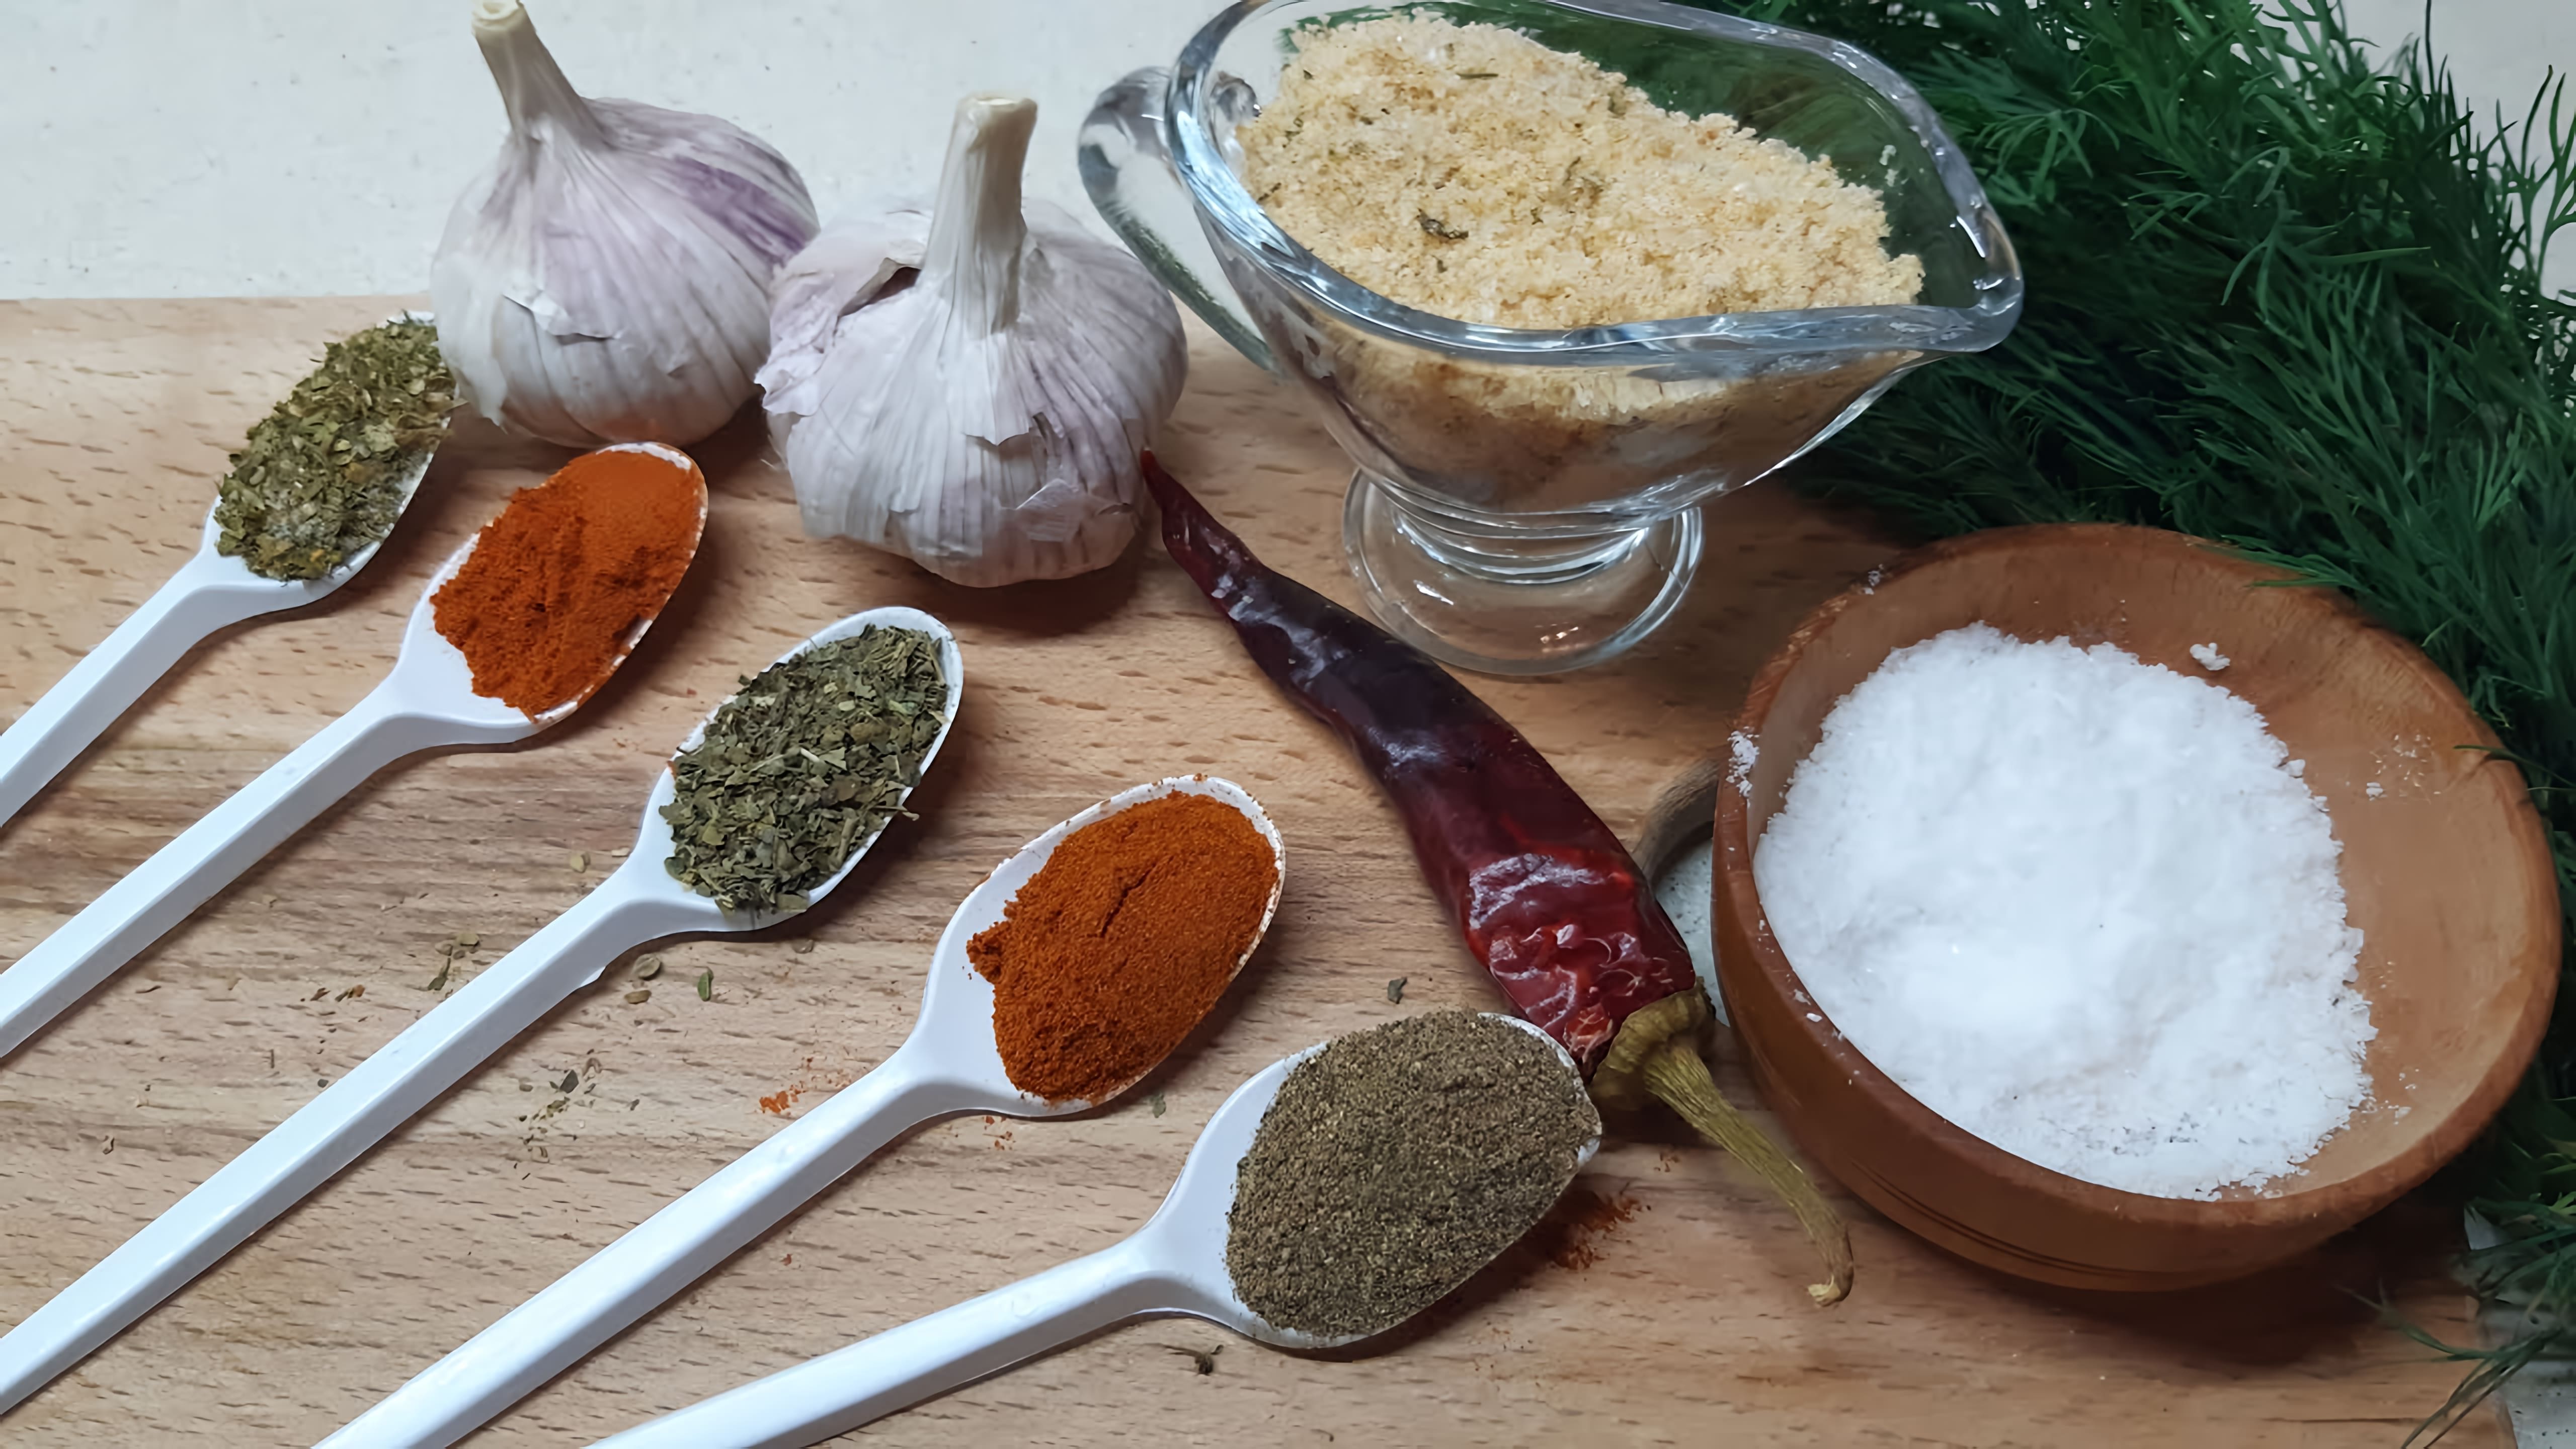 В этом видео демонстрируется процесс приготовления домашней адыгейской соли - натуральной смеси трав и специй, которую можно использовать в качестве приправы для различных блюд